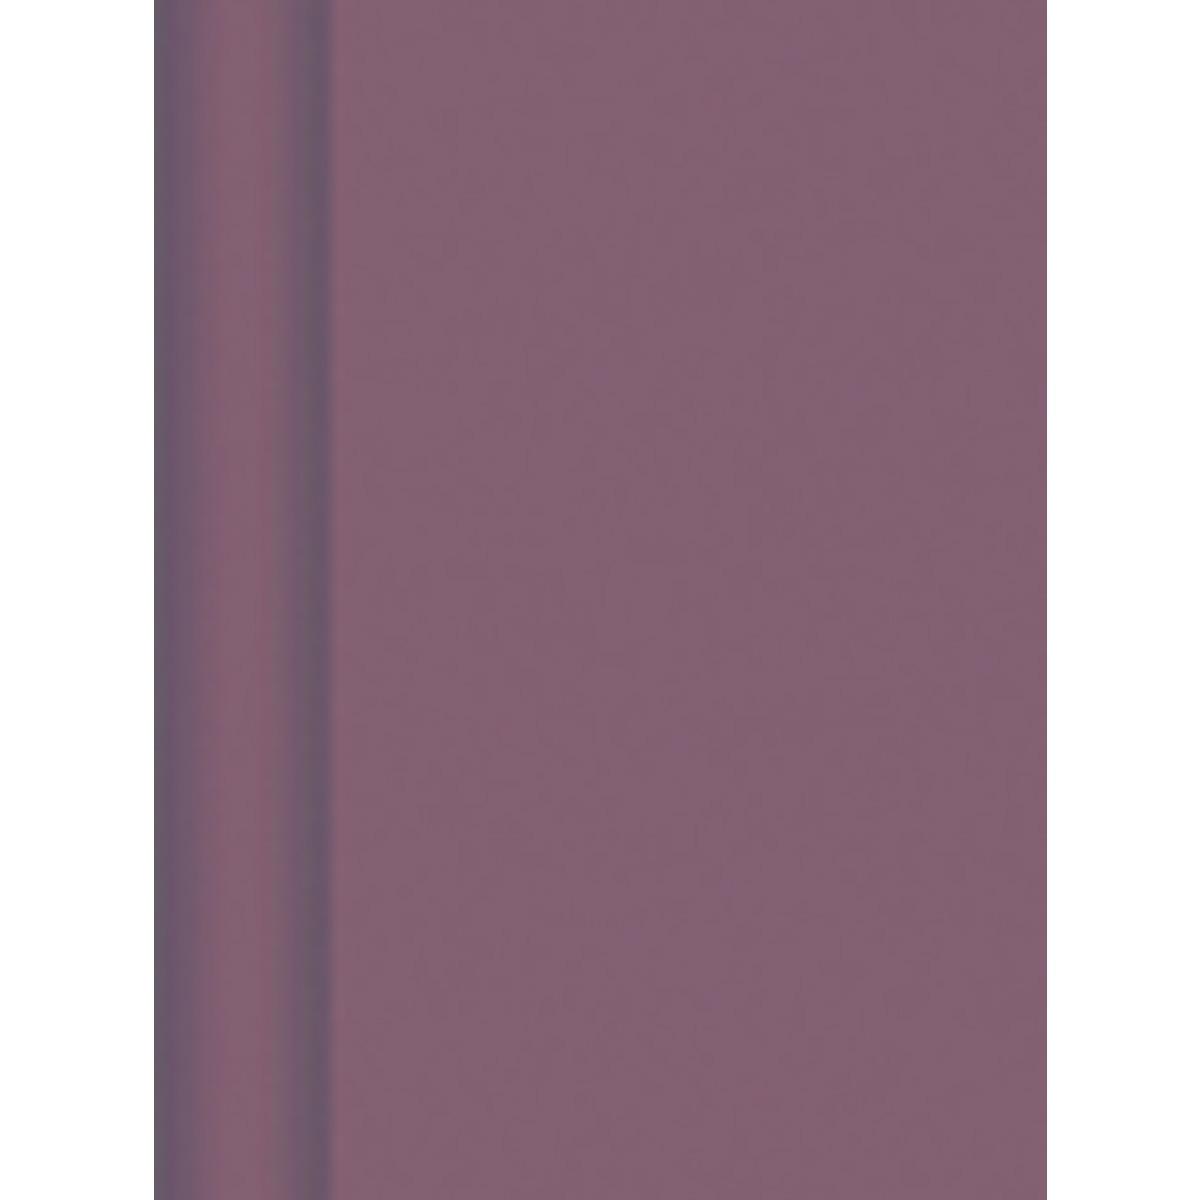 Nappe en rouleau Intissé  Gappy - Blanc  - 4,5 x 1,20 m - Intissé - Marron chocolat